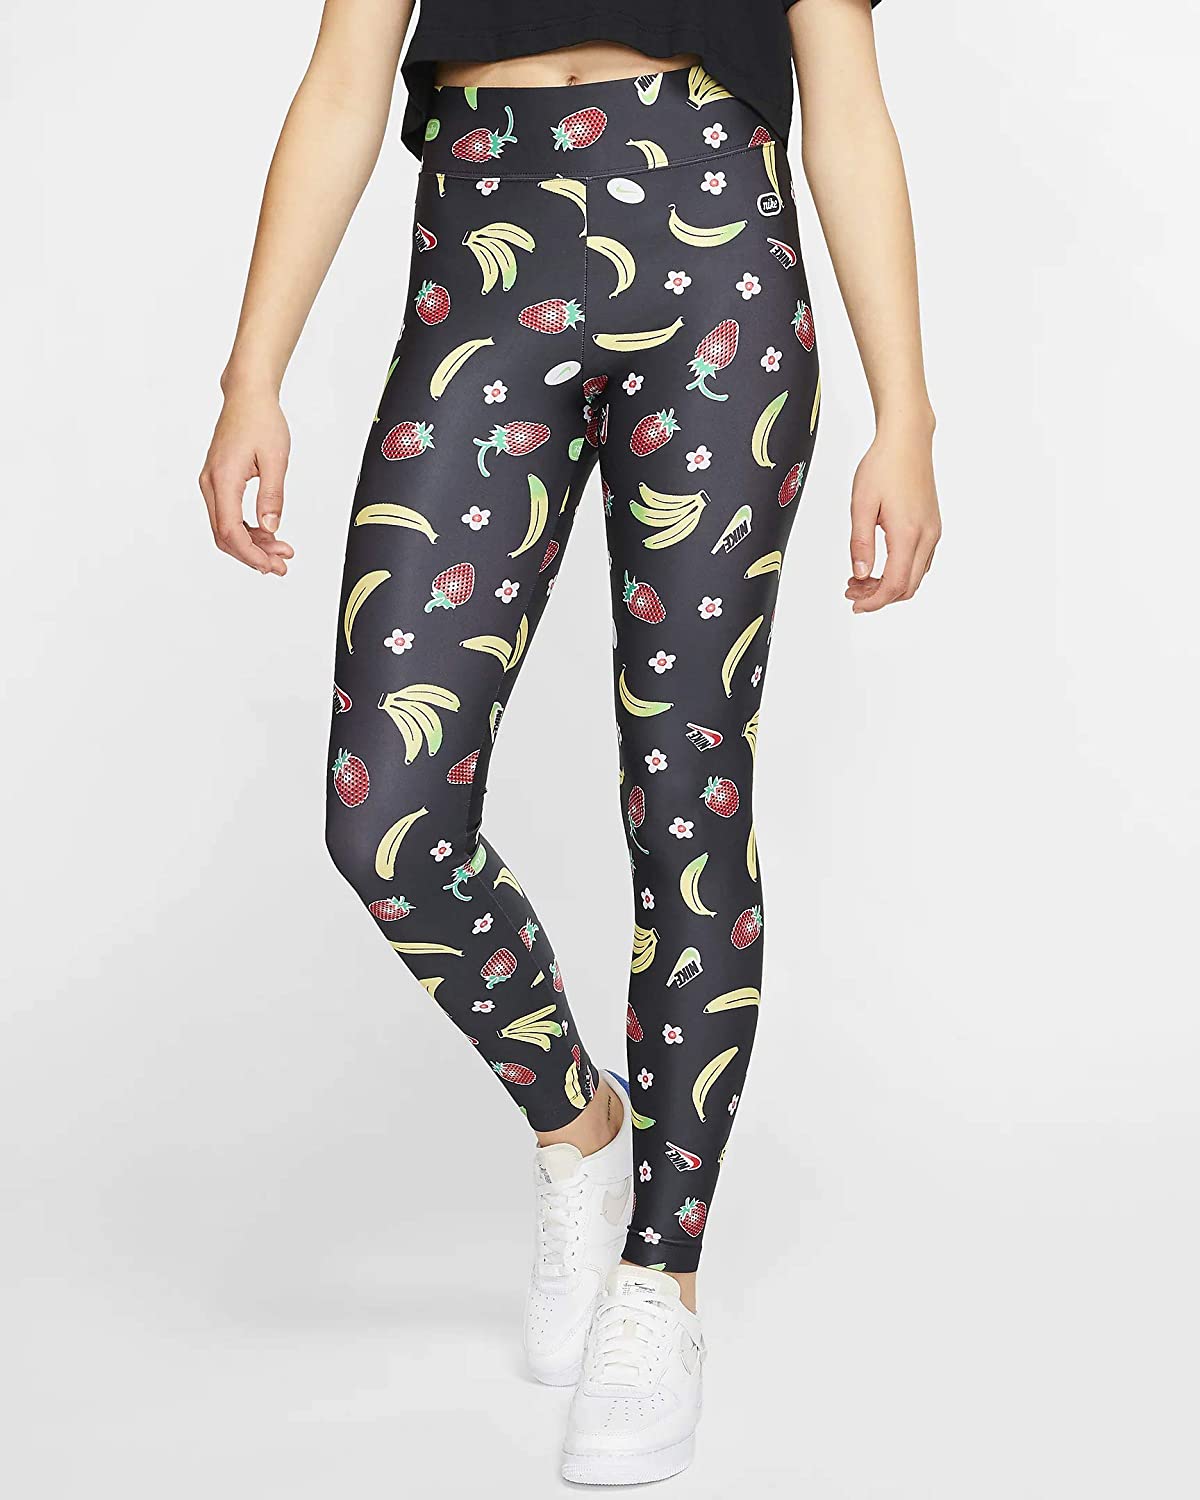 טייץ נייק לנשים Nike fruit printed tights icon - שחור/צבעוני